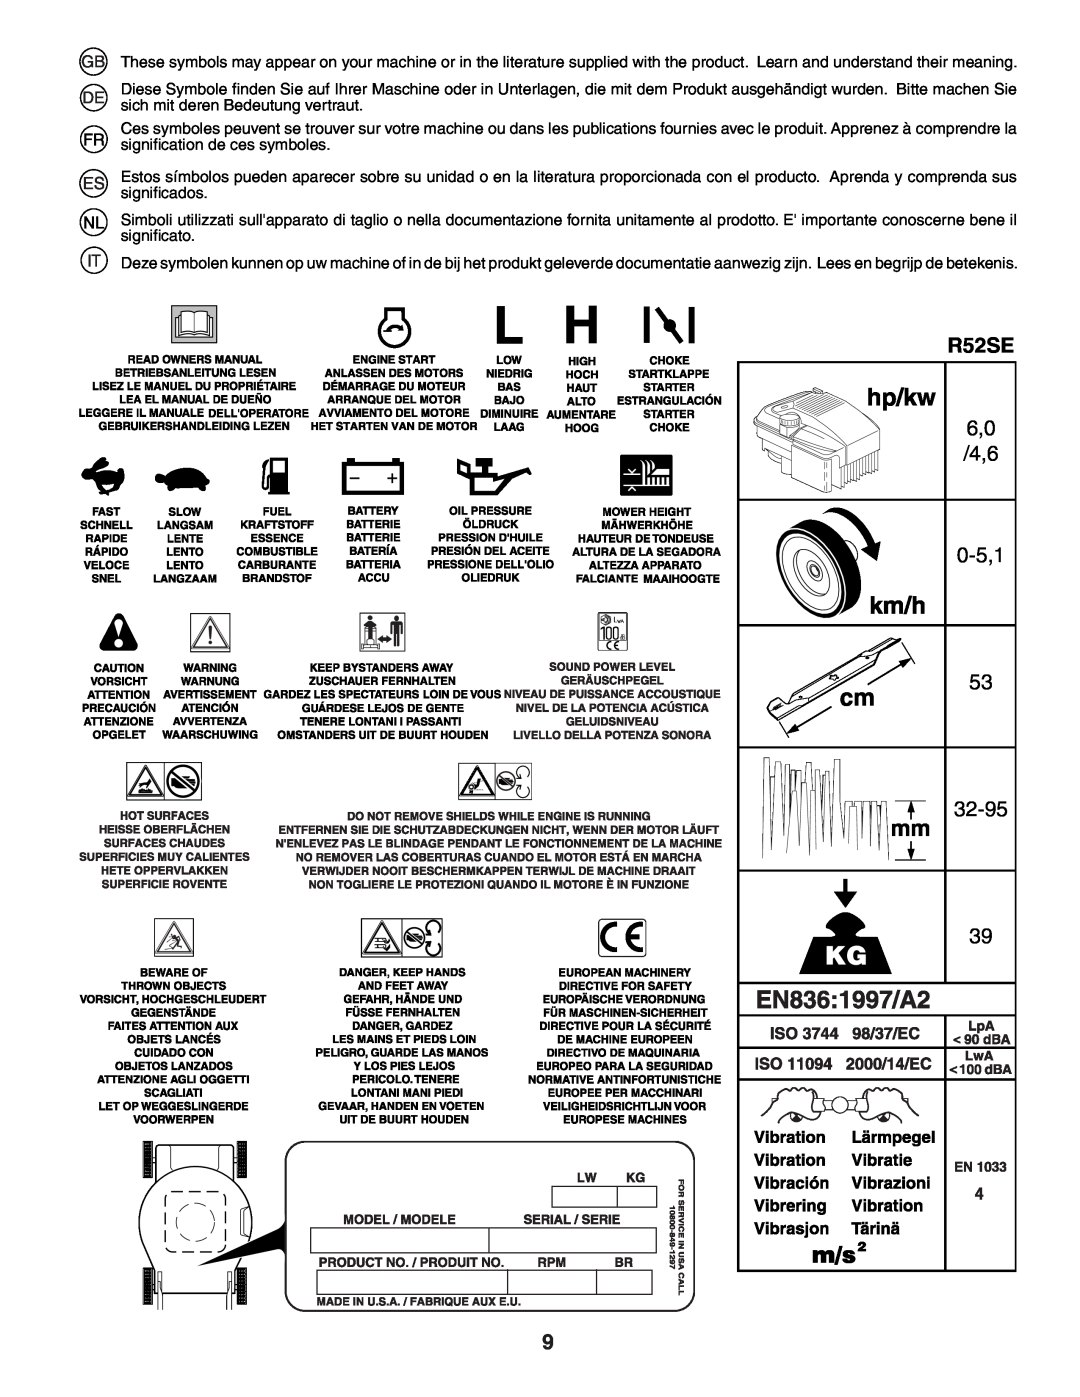 Husqvarna R52SE instruction manual 0-5,1, 32-95 